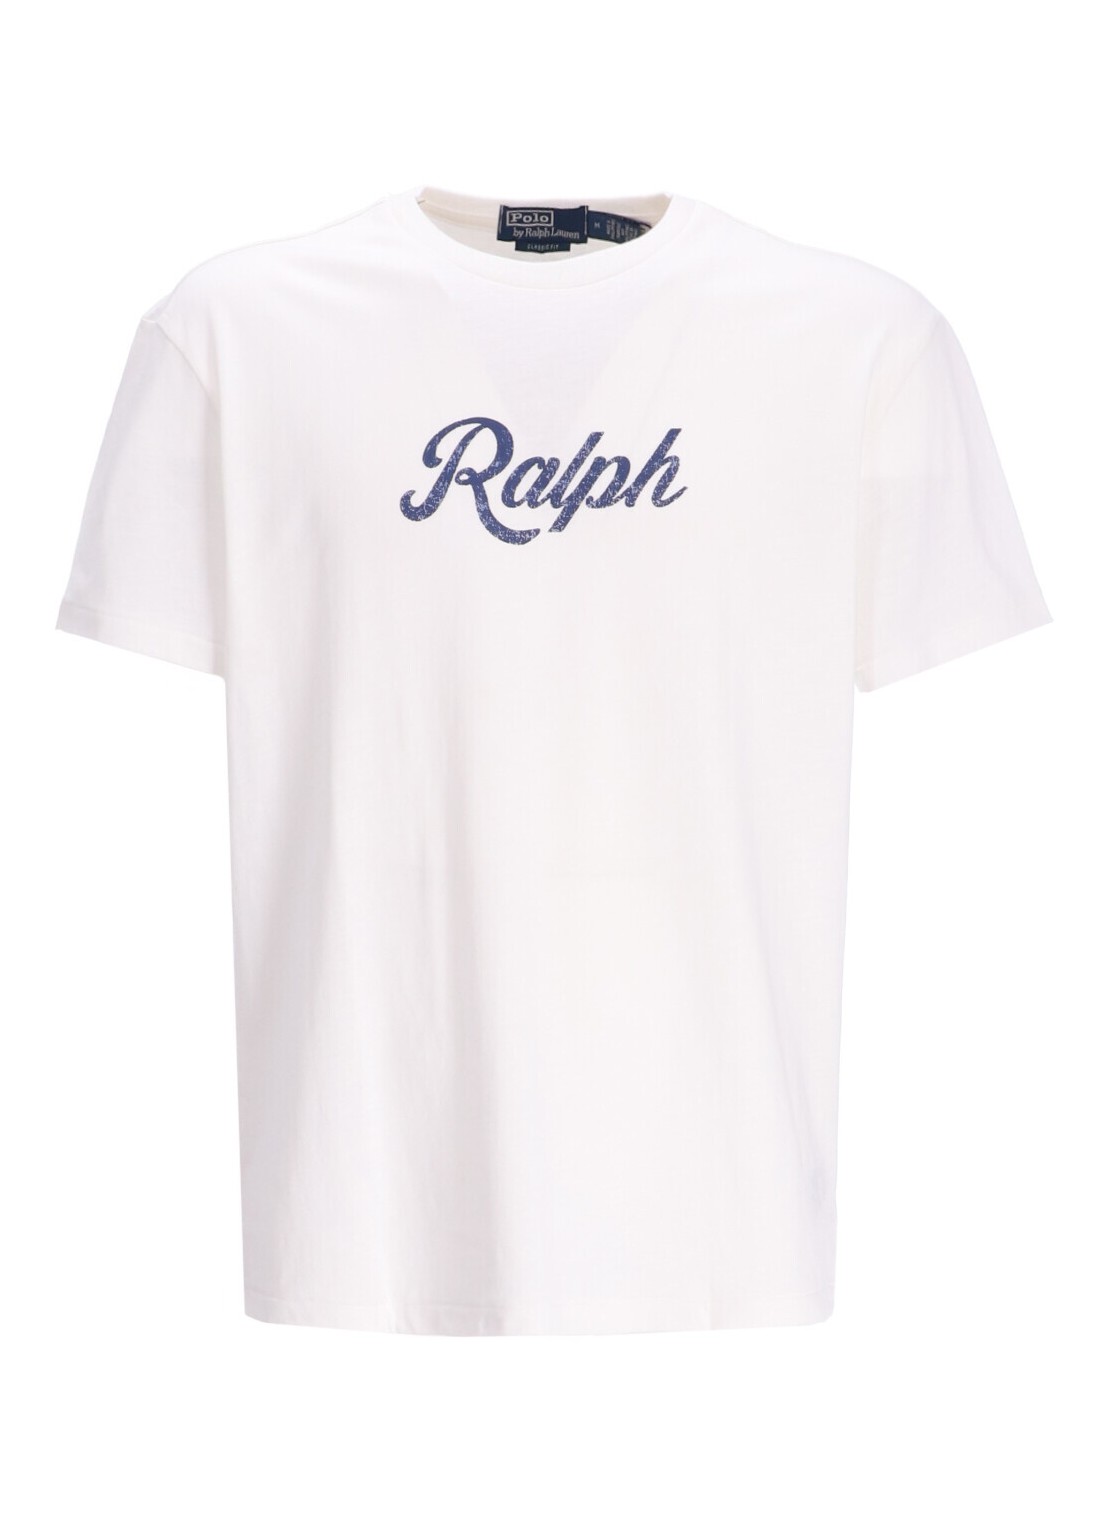 Camiseta polo ralph lauren t-shirt mansscnclsm1-short sleeve-t-shirt - 710936401002 nevis talla XL
 